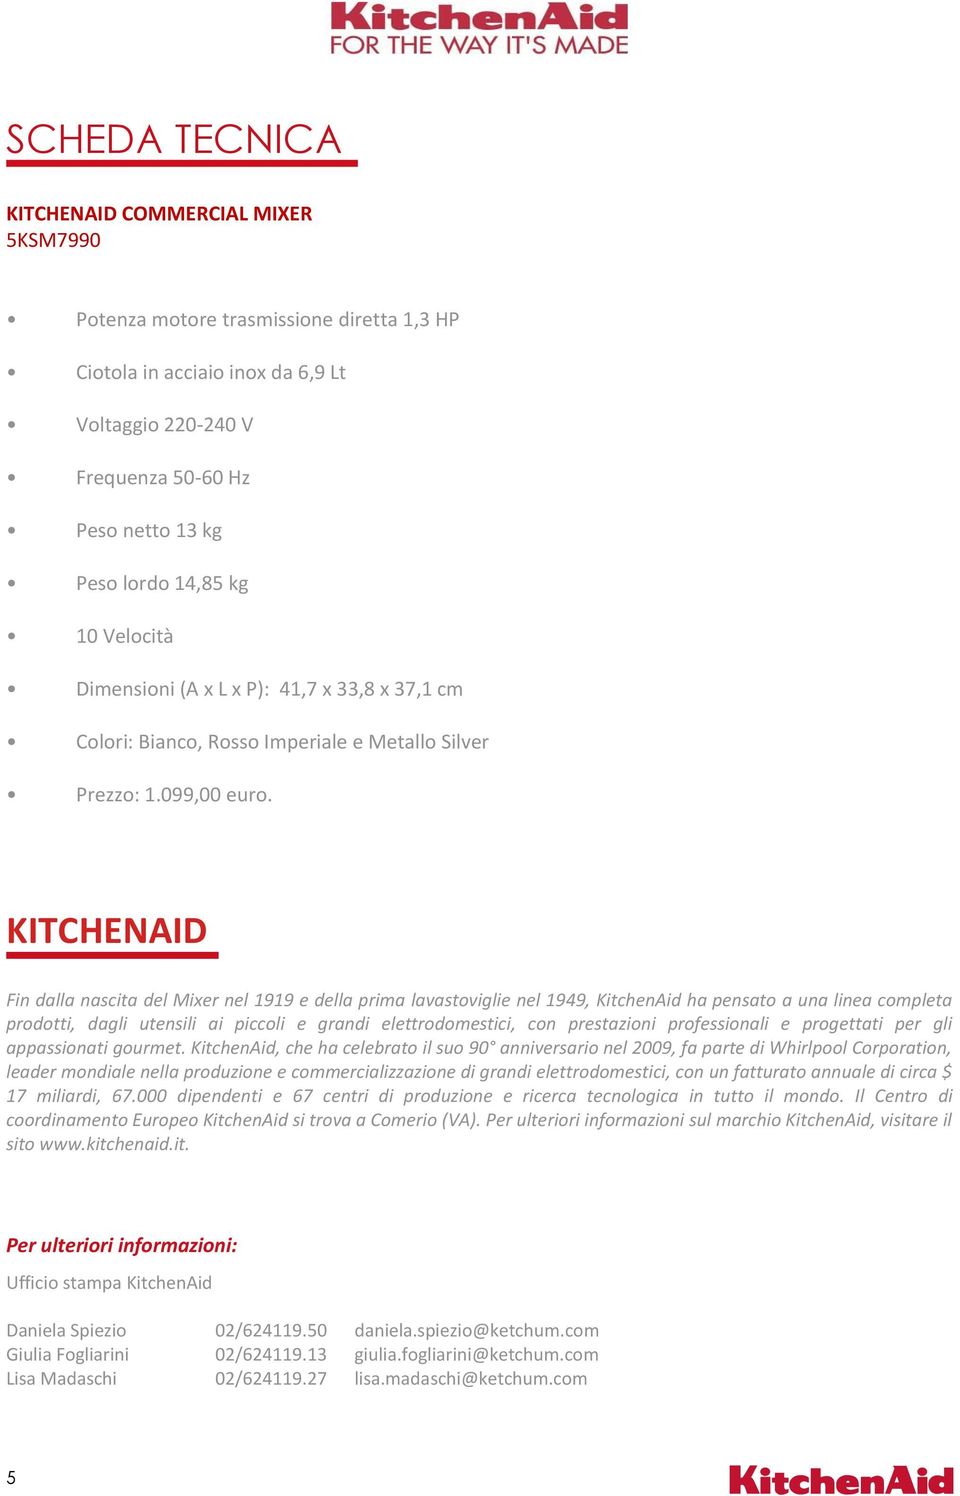 KITCHENAID Fin dalla nascita del Mixer nel 1919 e della prima lavastoviglie nel 1949, KitchenAid ha pensato a una linea completa prodotti, dagli utensili ai piccoli e grandi elettrodomestici, con